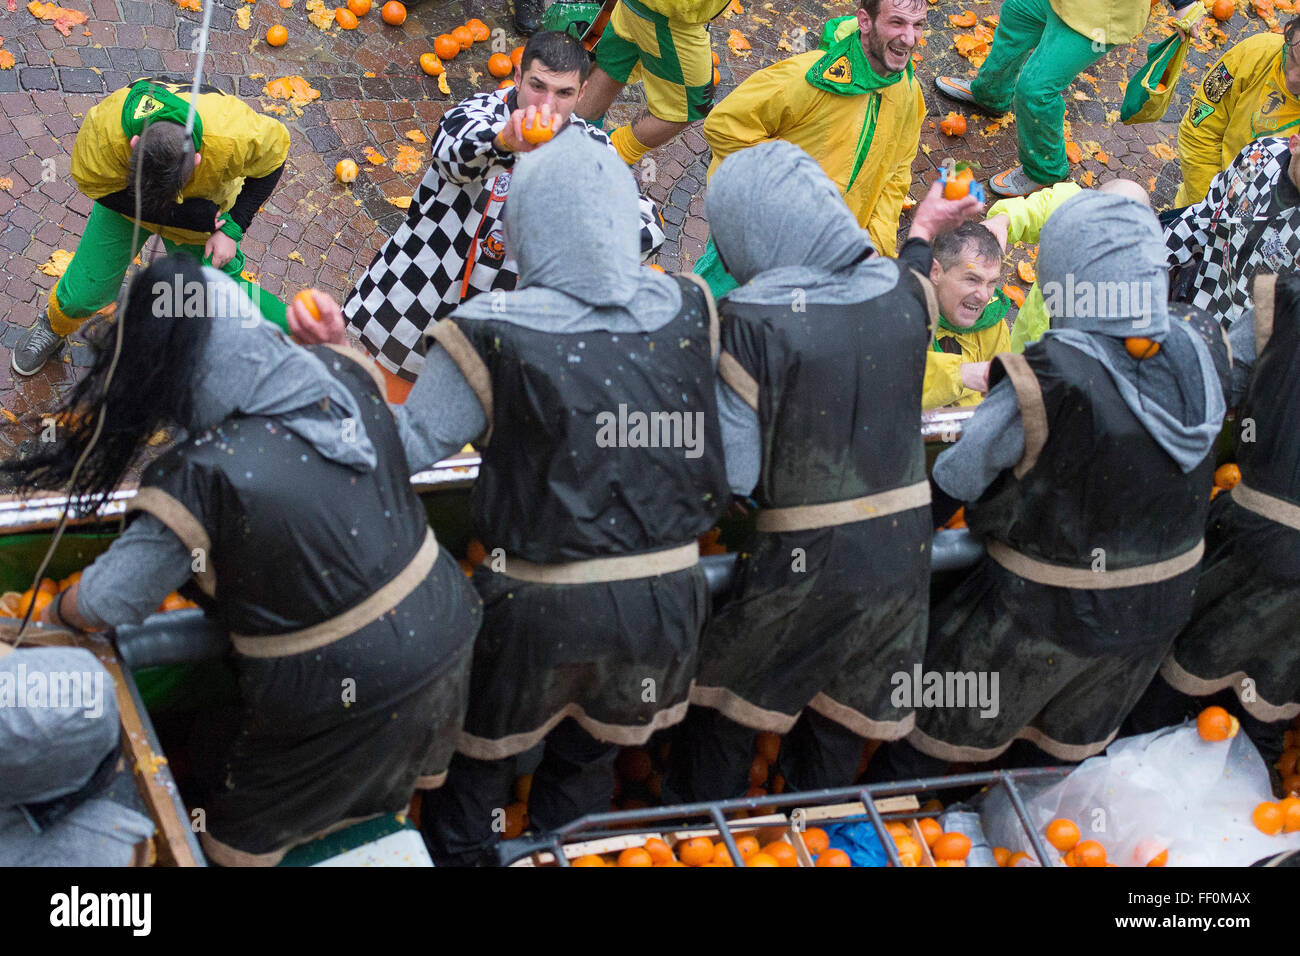 Die traditionelle "Schlacht der Apfelsinen" Während der Karneval in ivrea am 7. Februar statt, 2016 in Ivrea bei Turin, Italien Stockfoto